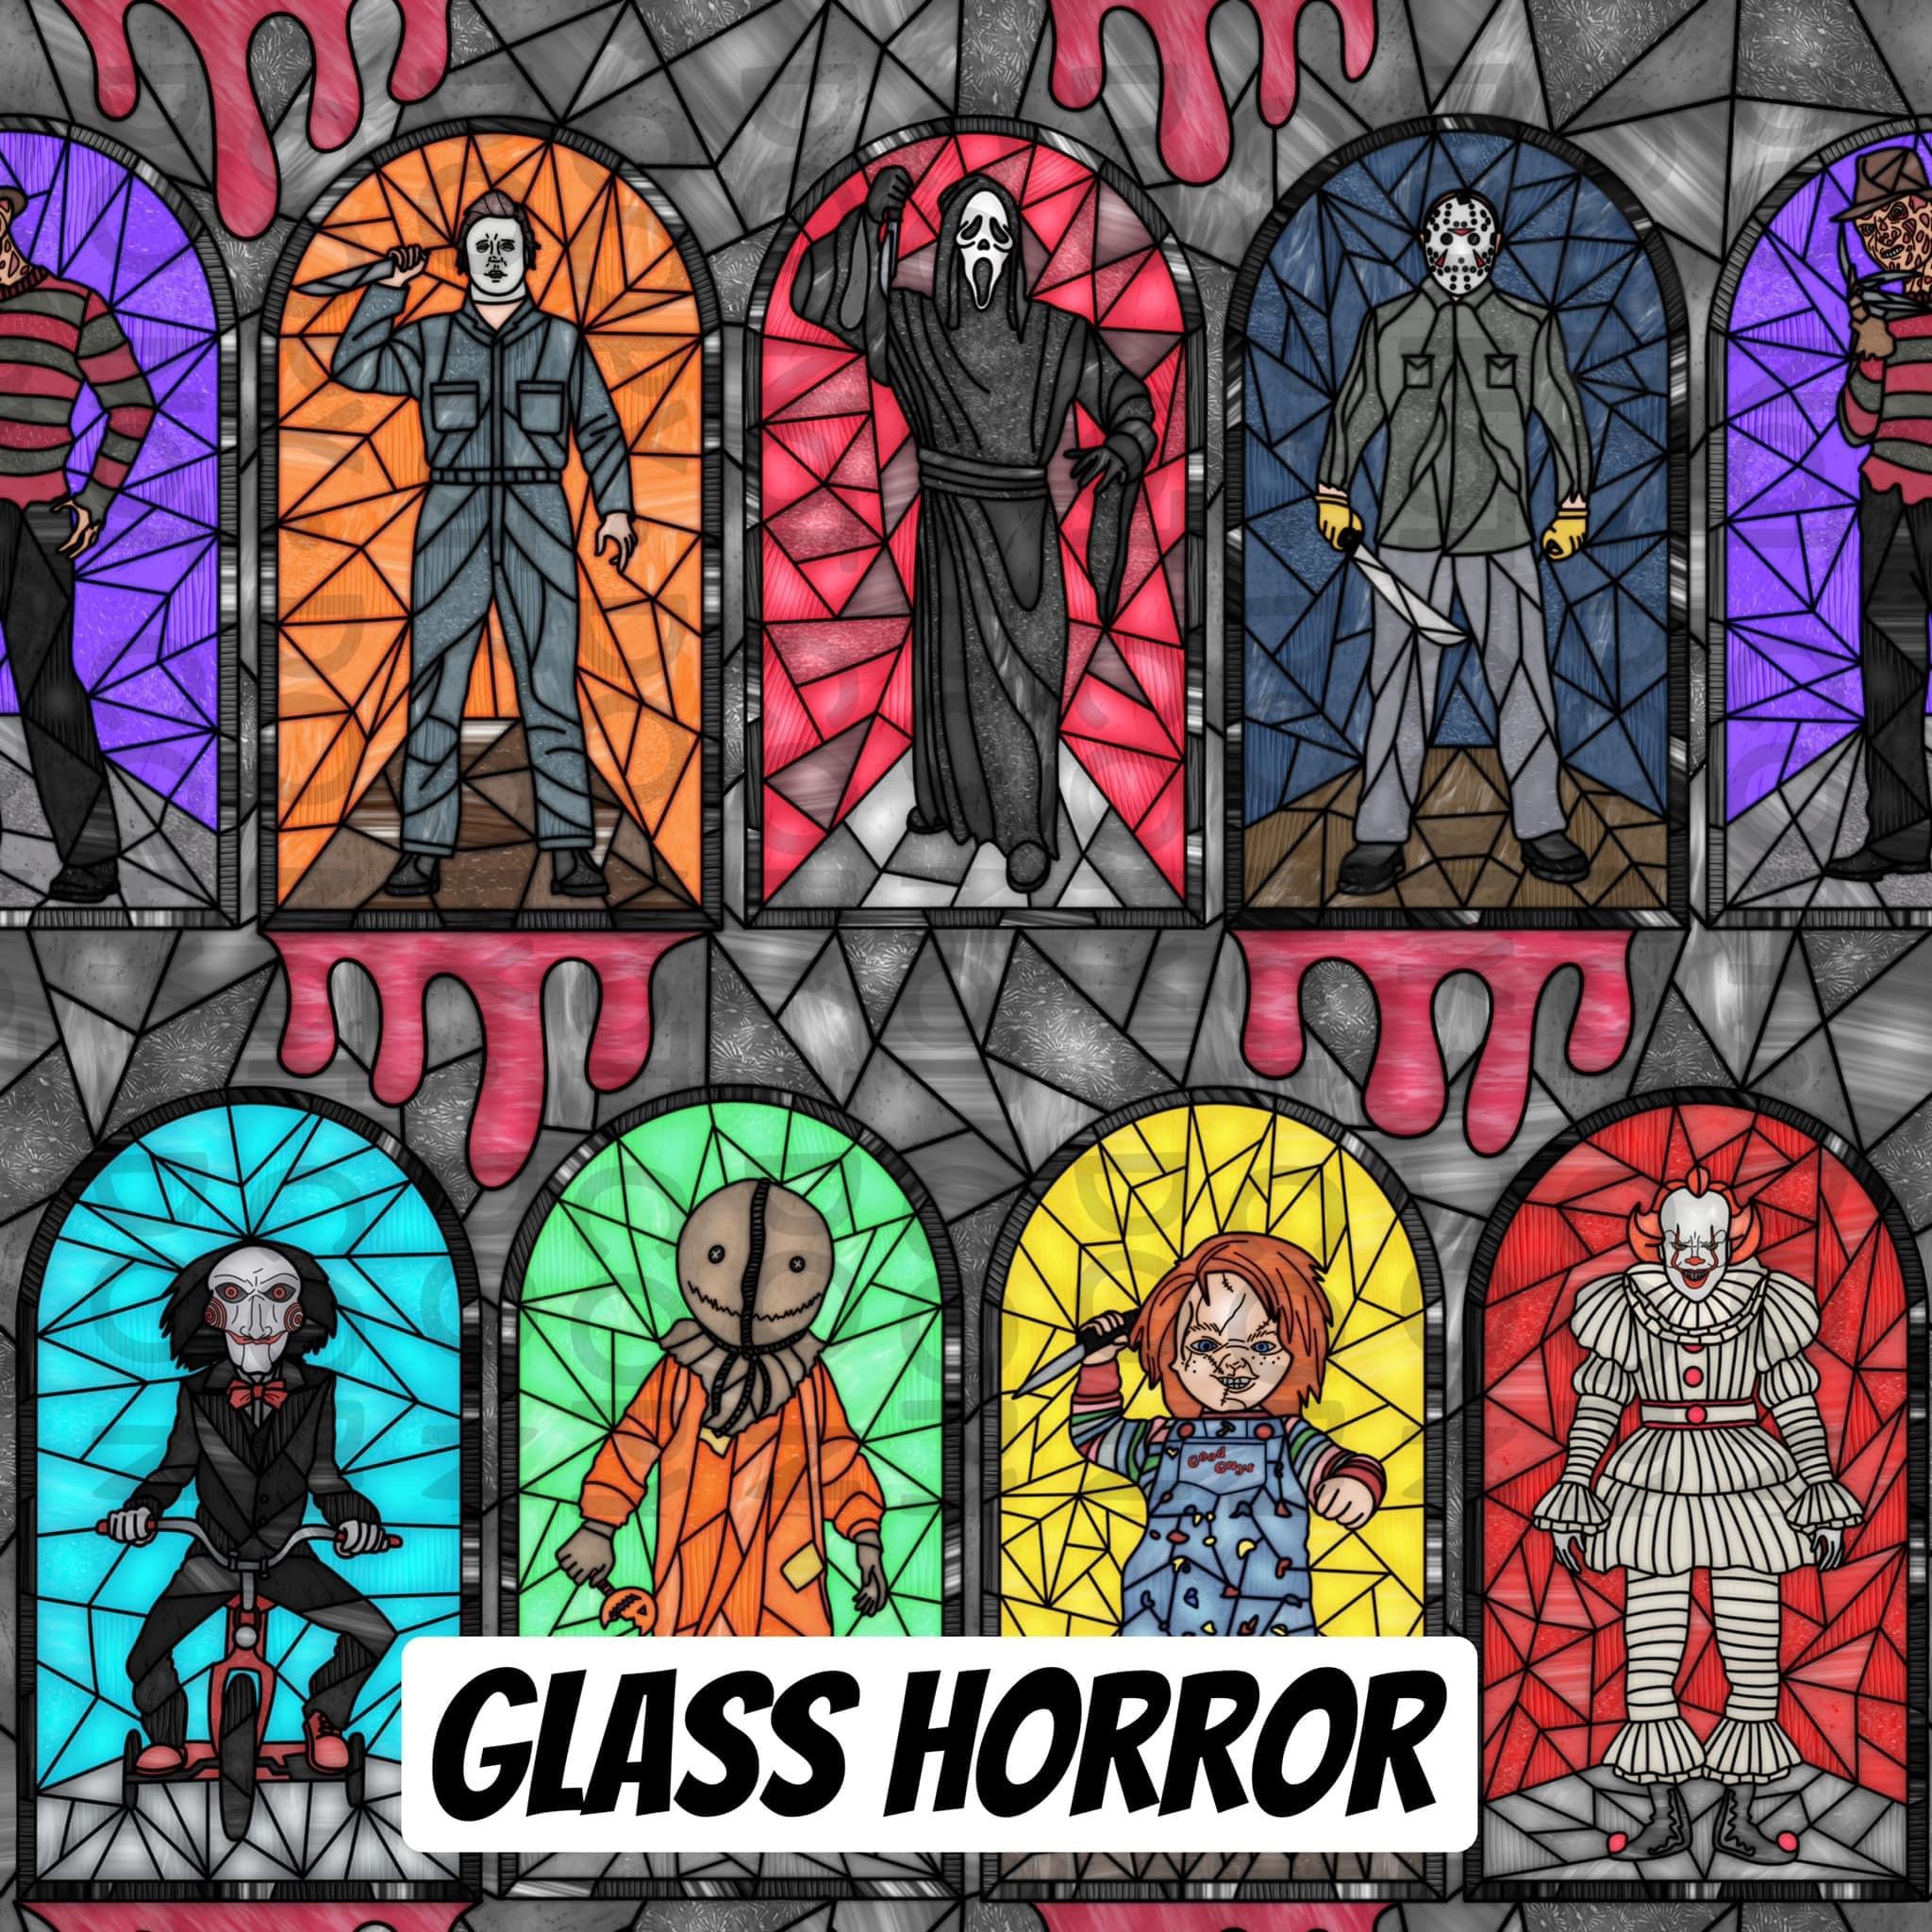 Glass horror